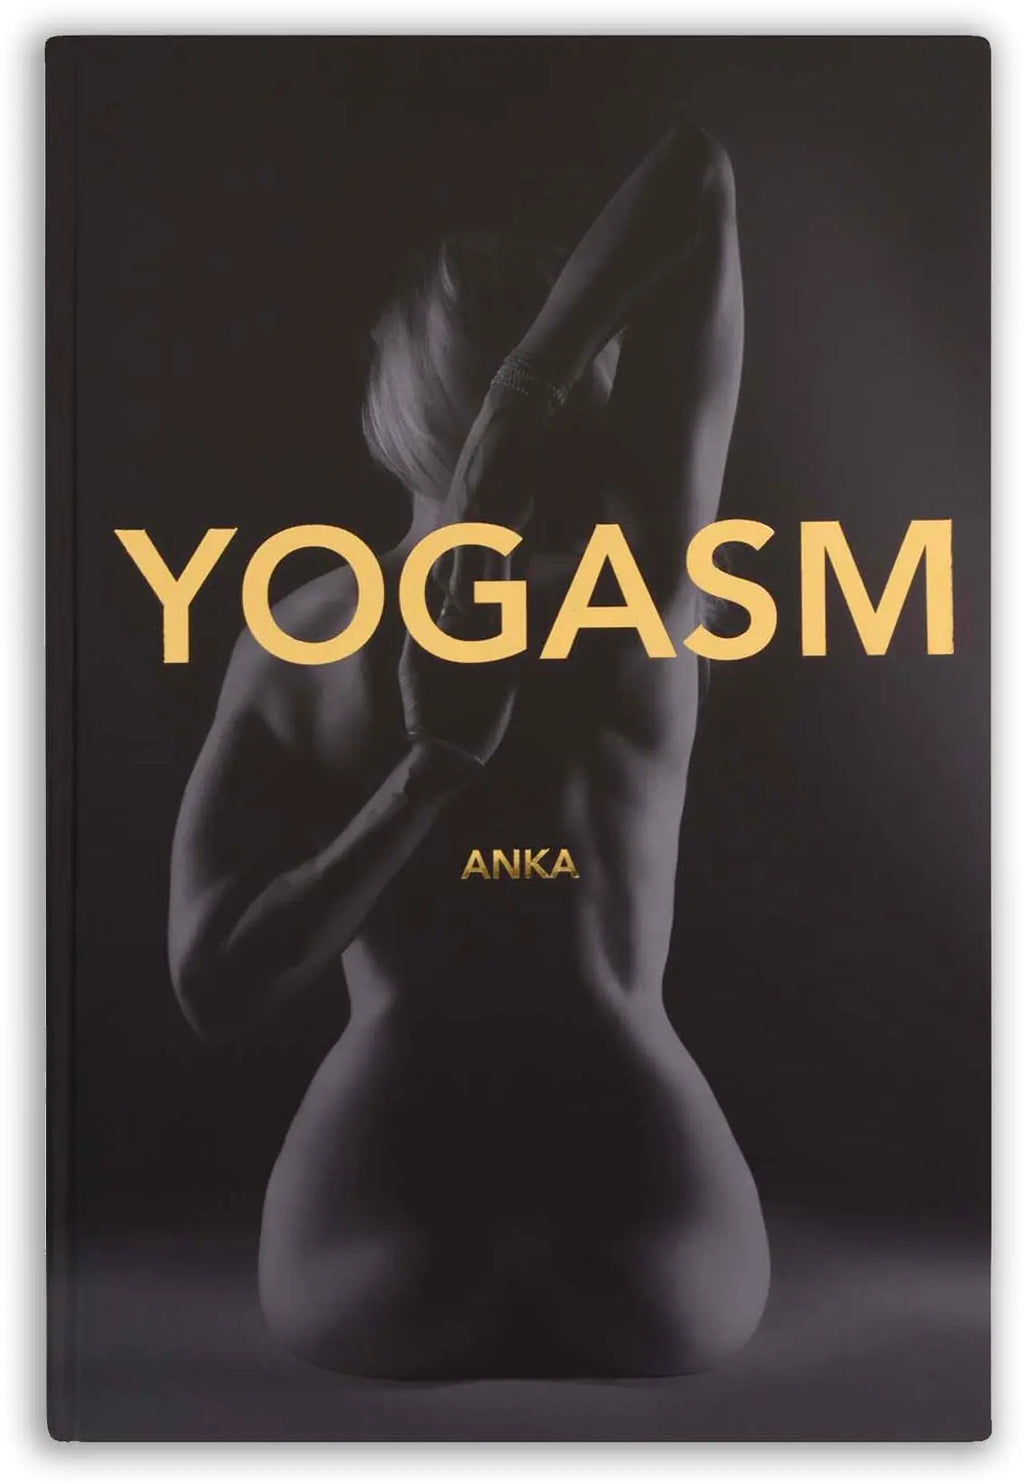 Livre d'art YOGASM par Anka, d'après l'idée d'Hélène Duval YUJ - Maison de pleine conscience